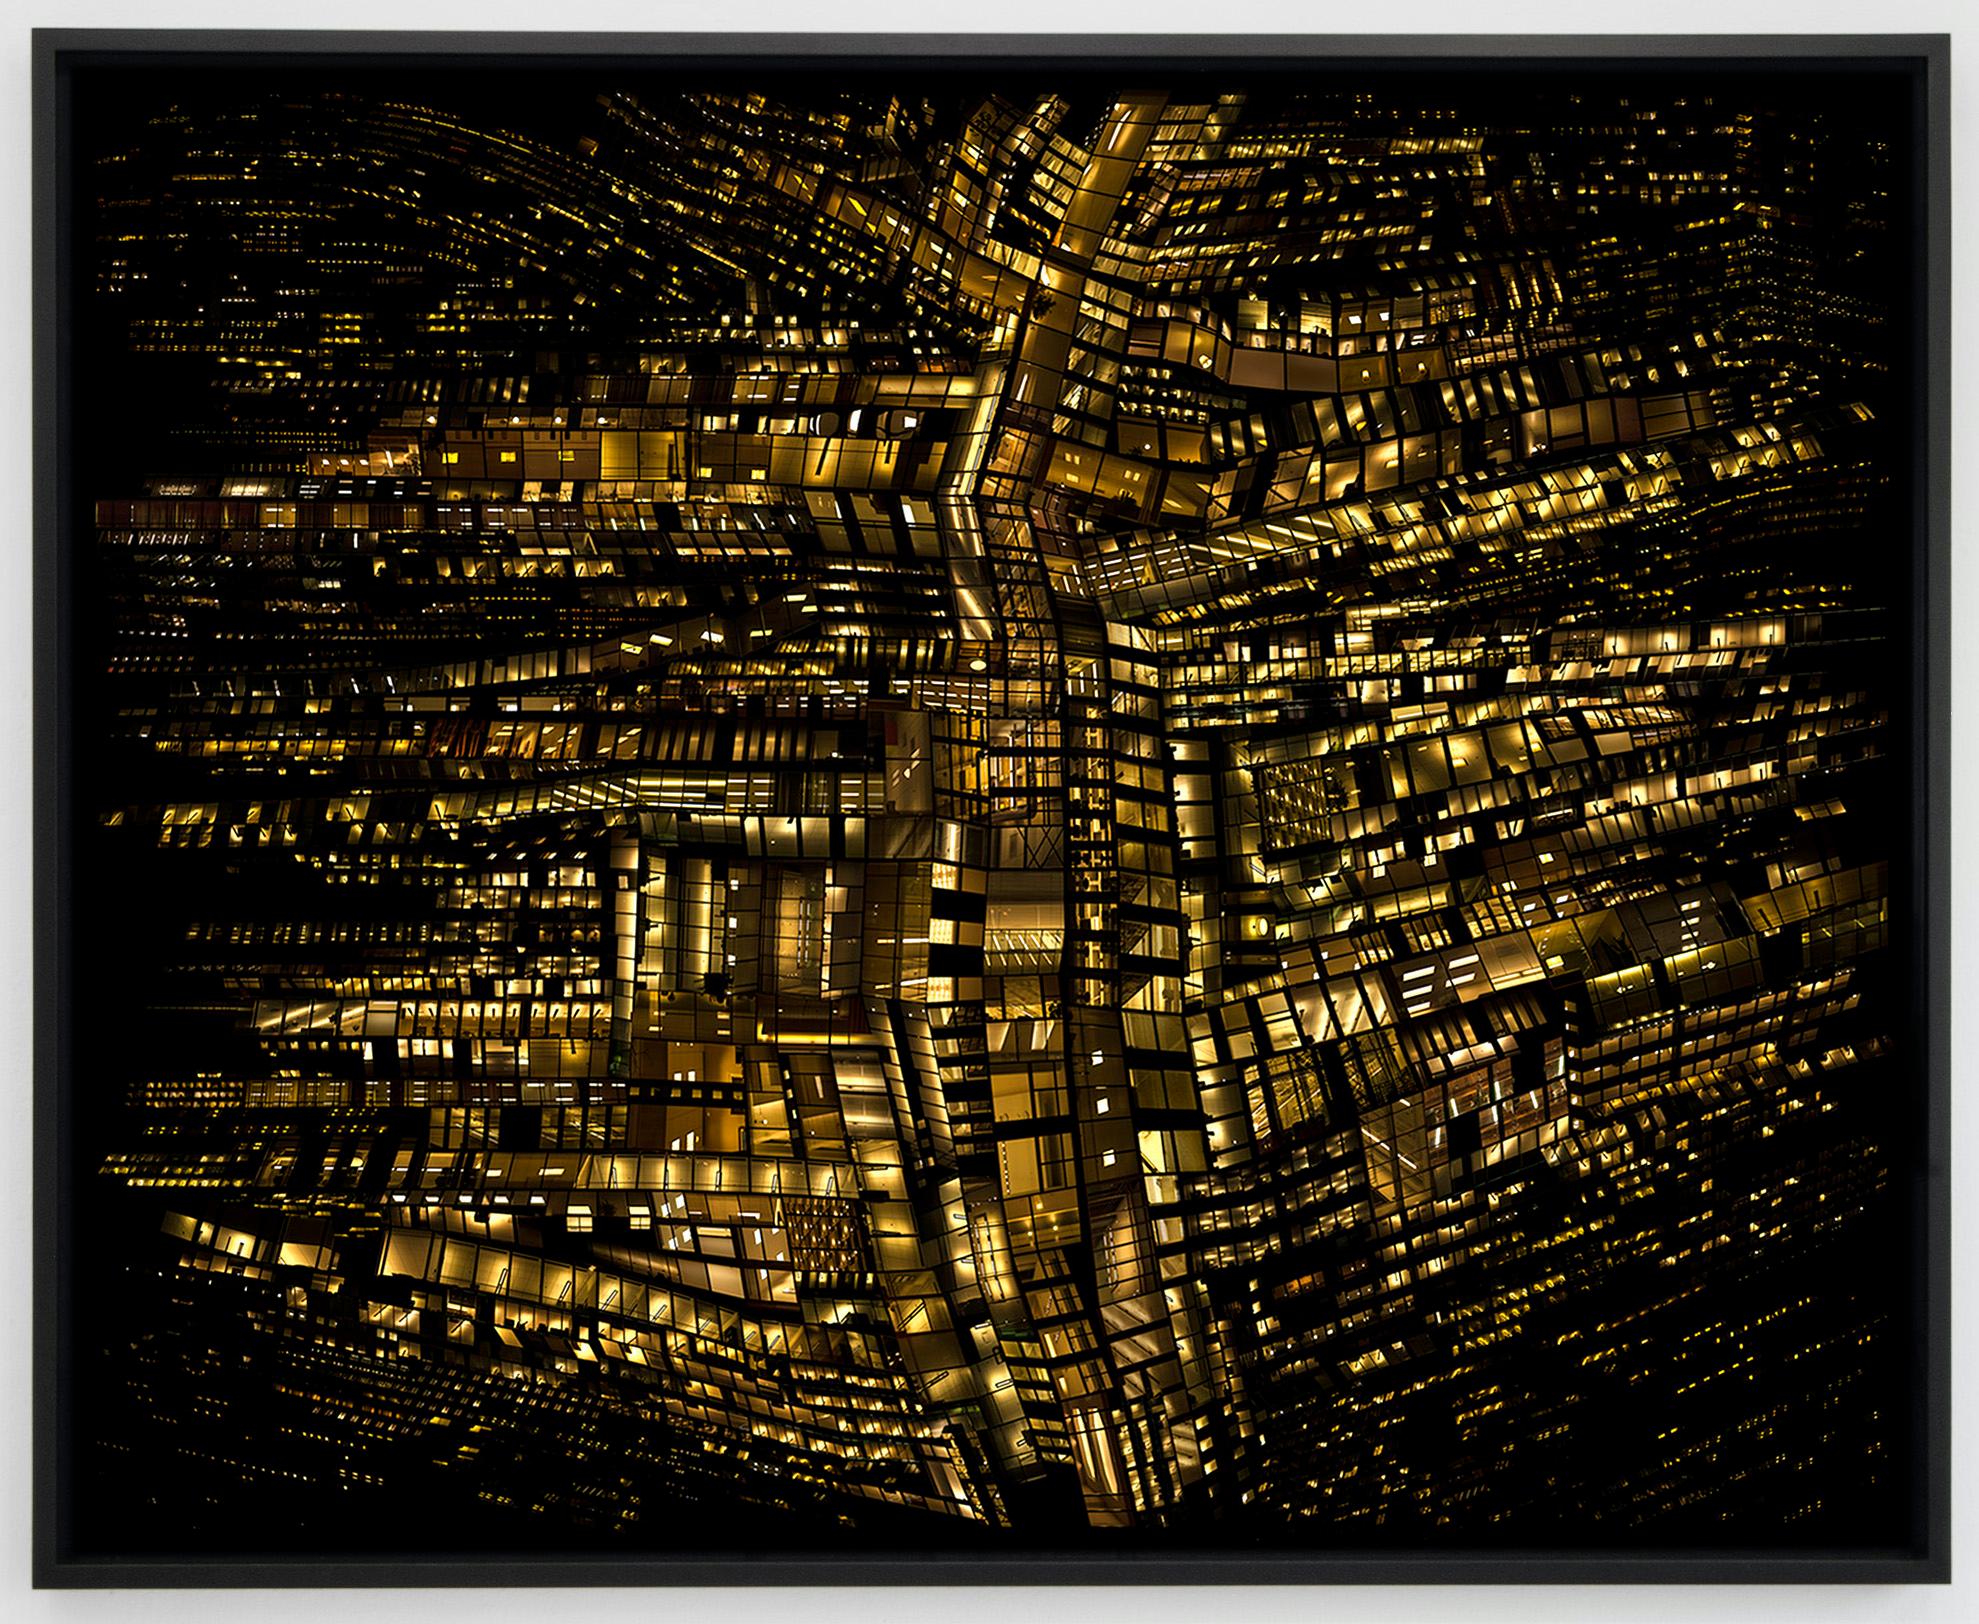 Color Photograph Hubert Blanz - Urban Codes 03 - Photographie de ville architecturale abstraite contemporaine par nuit